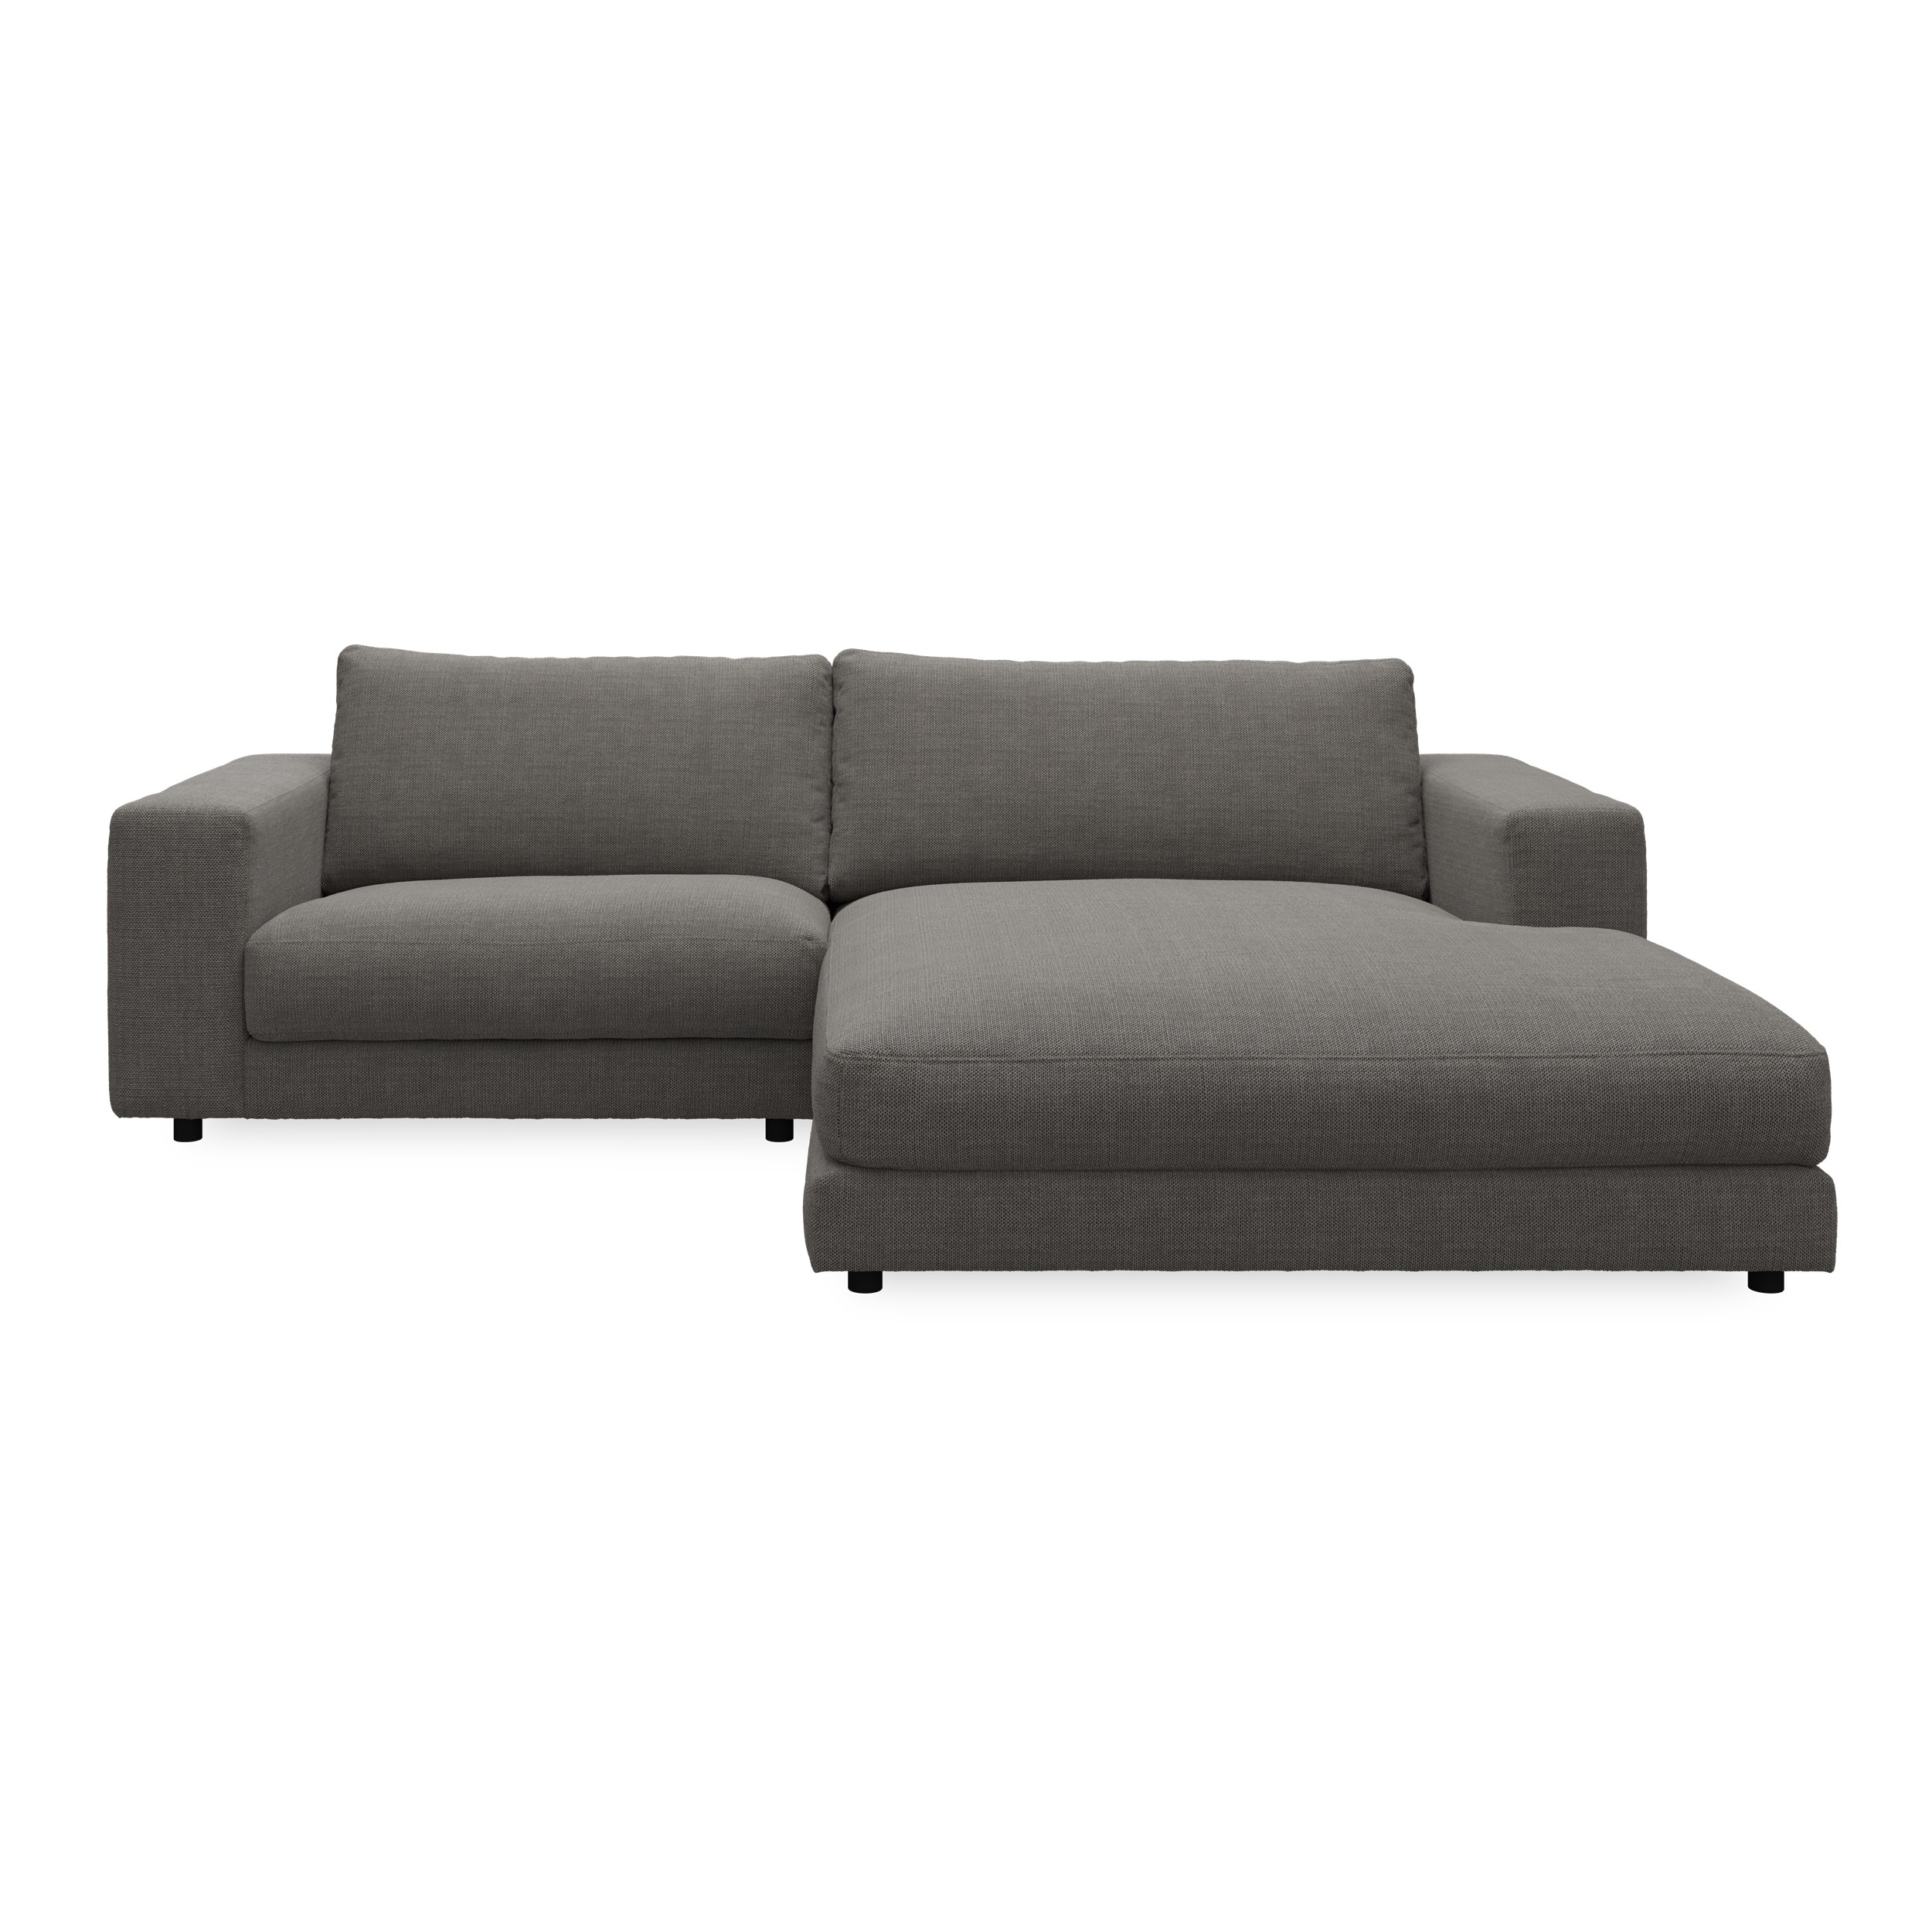 Bennent högervänd soffa med schäslong - Picasso Black klädsel, ben i svart plast och S:skum/fib/din/sili R:Dun/skum